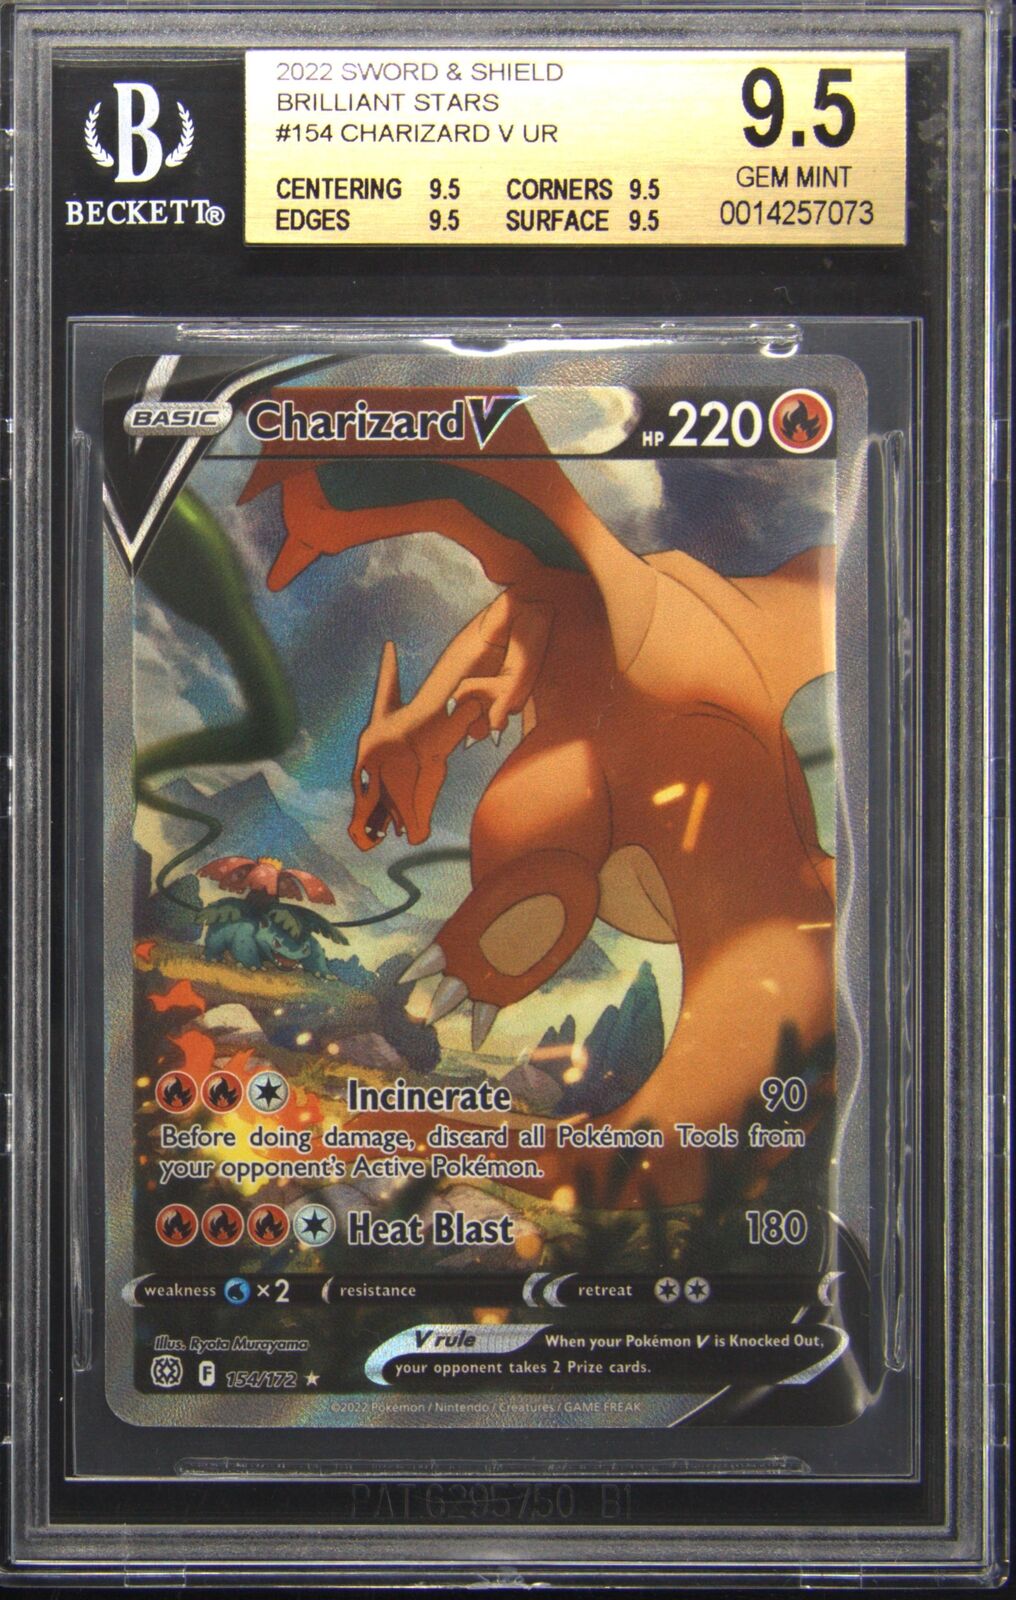 2022 154 Charizard V Alternate Full Art Ultra Rare Pokemon TCG Card BGS 9.5